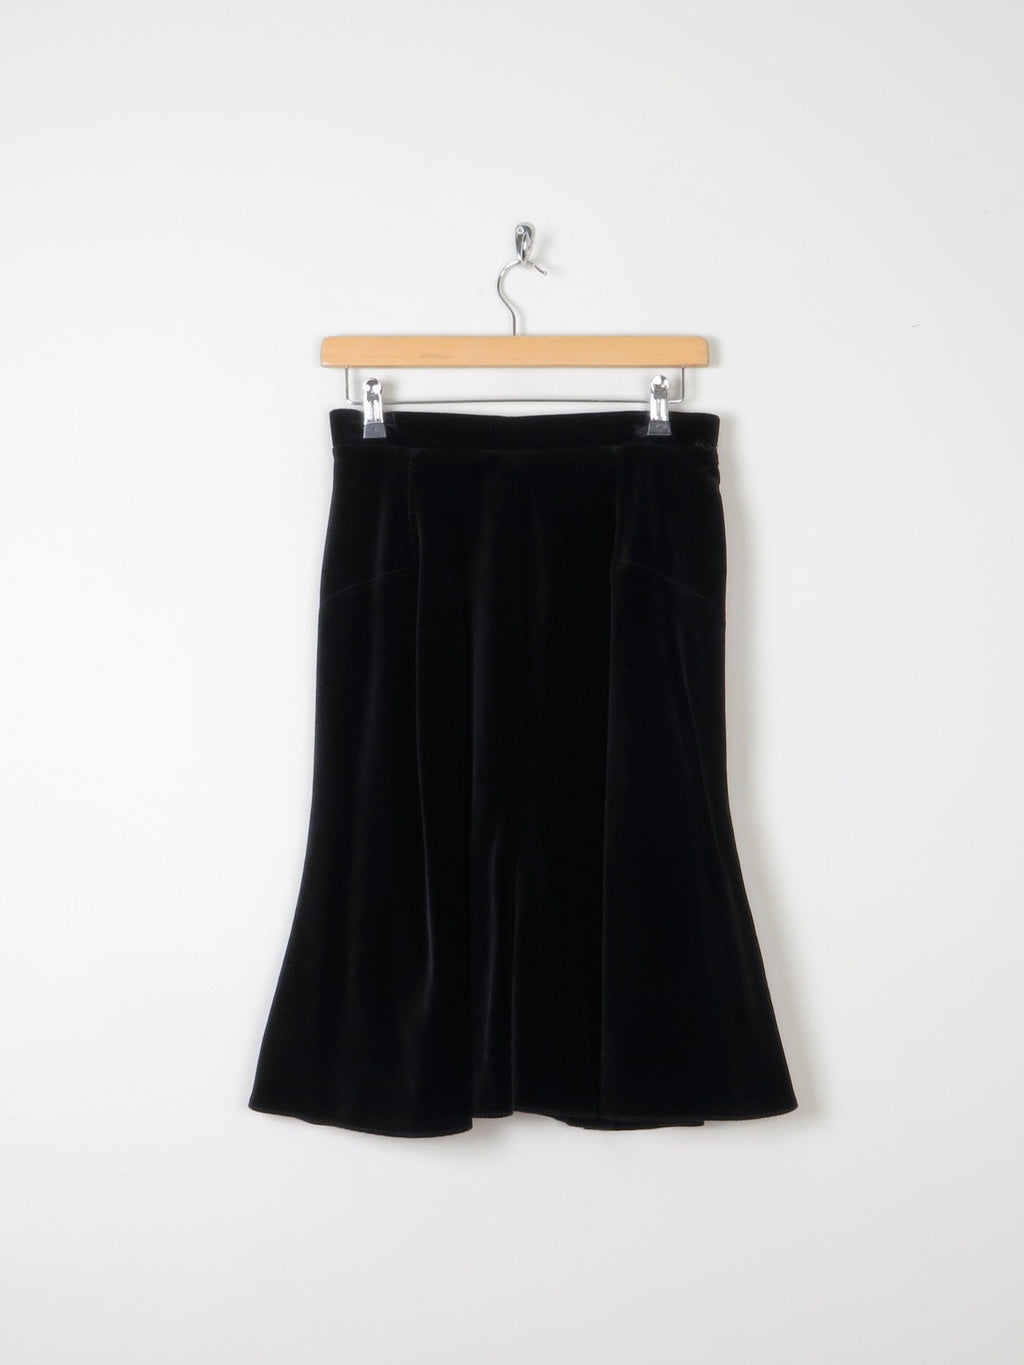 Vintage Black Velvet 1970s Skirt Bias Cut 8/10 Approx - The Harlequin